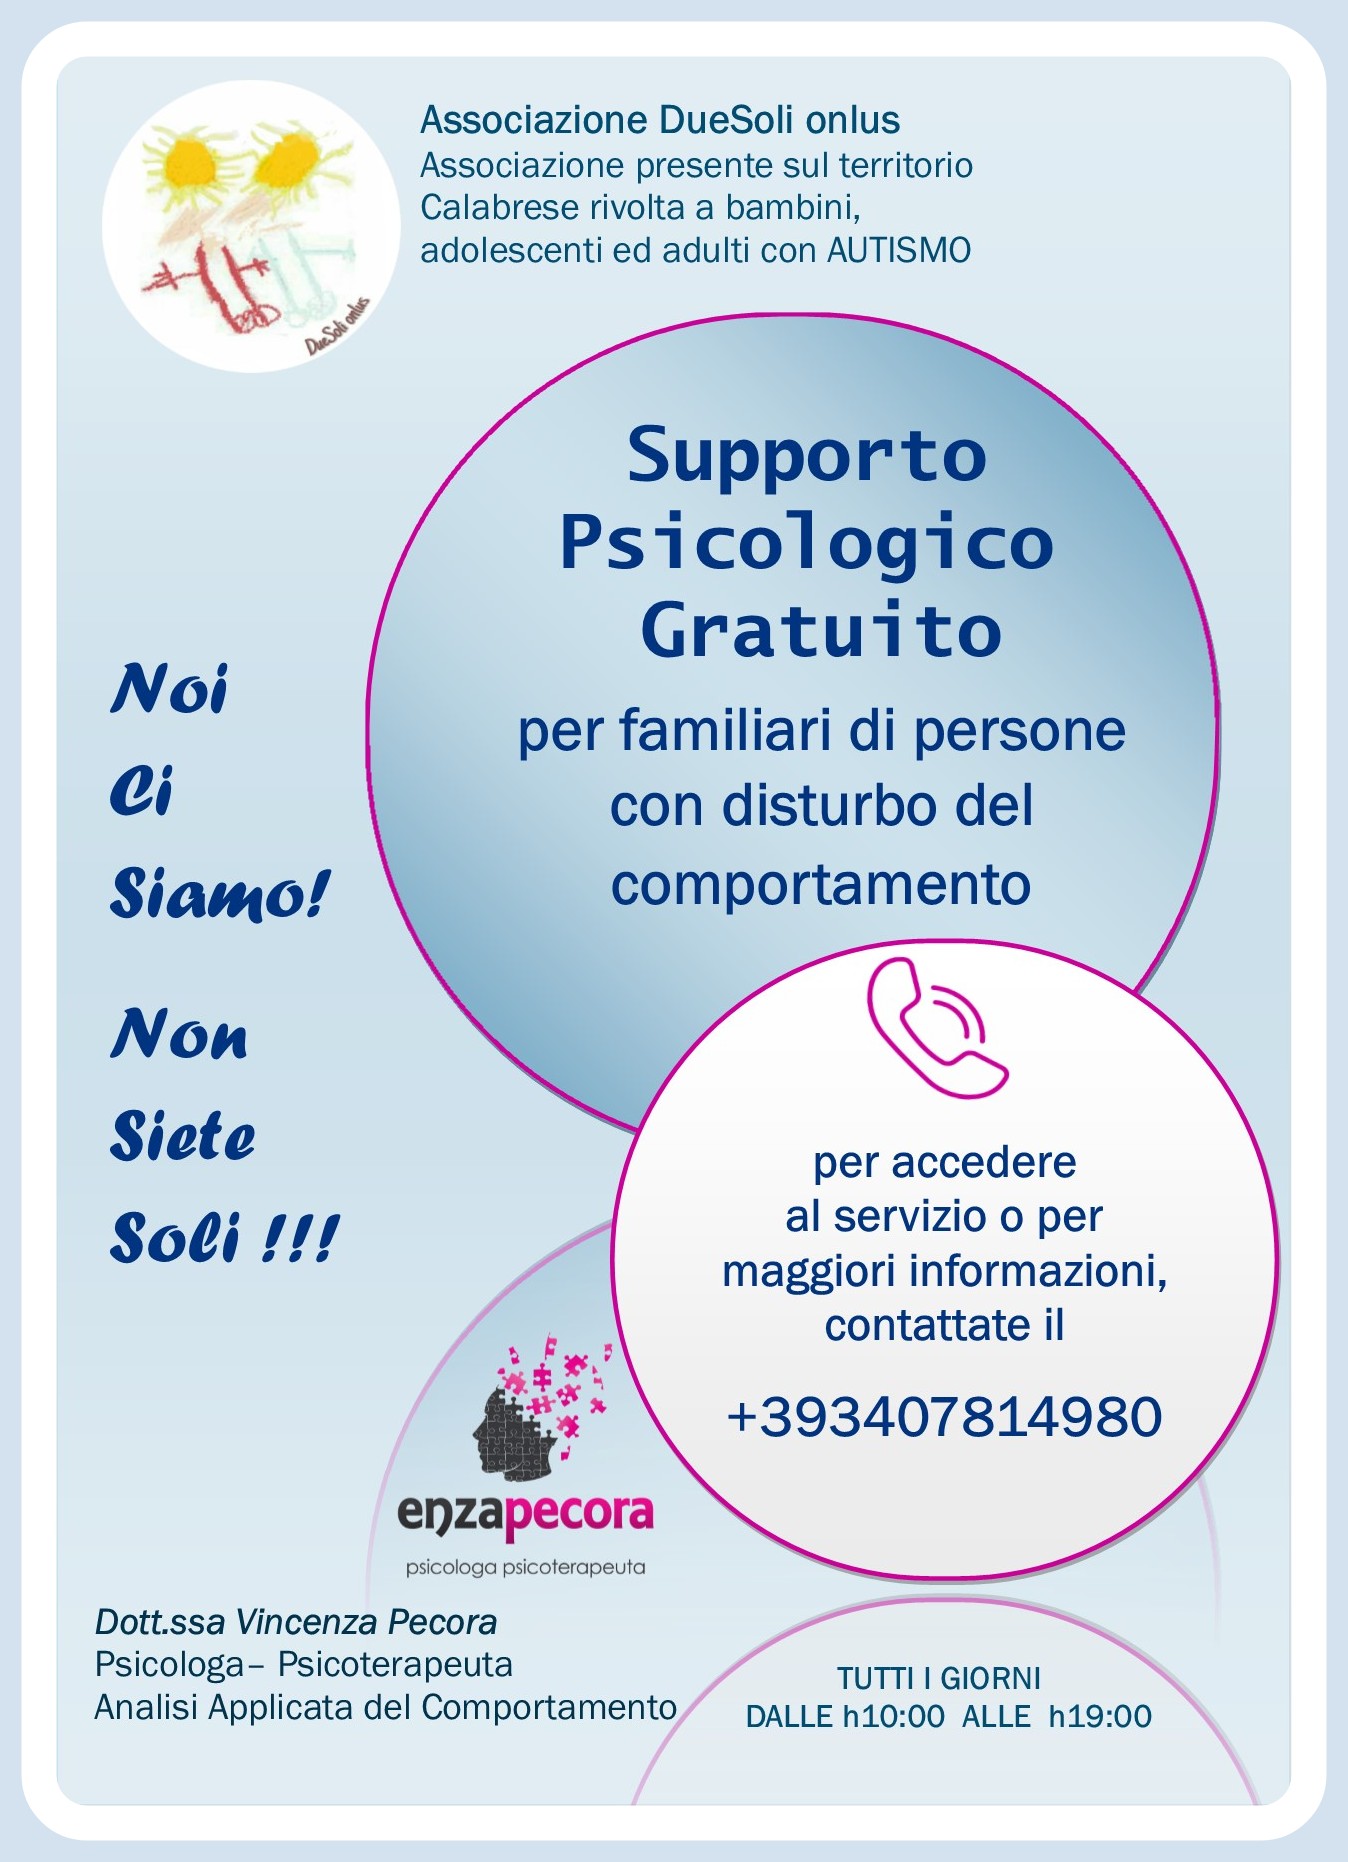 Coronavirus a Reggio Calabria, “DueSoli” offre consulenza psicologica alle famiglie con persone con autismo, in difficoltà